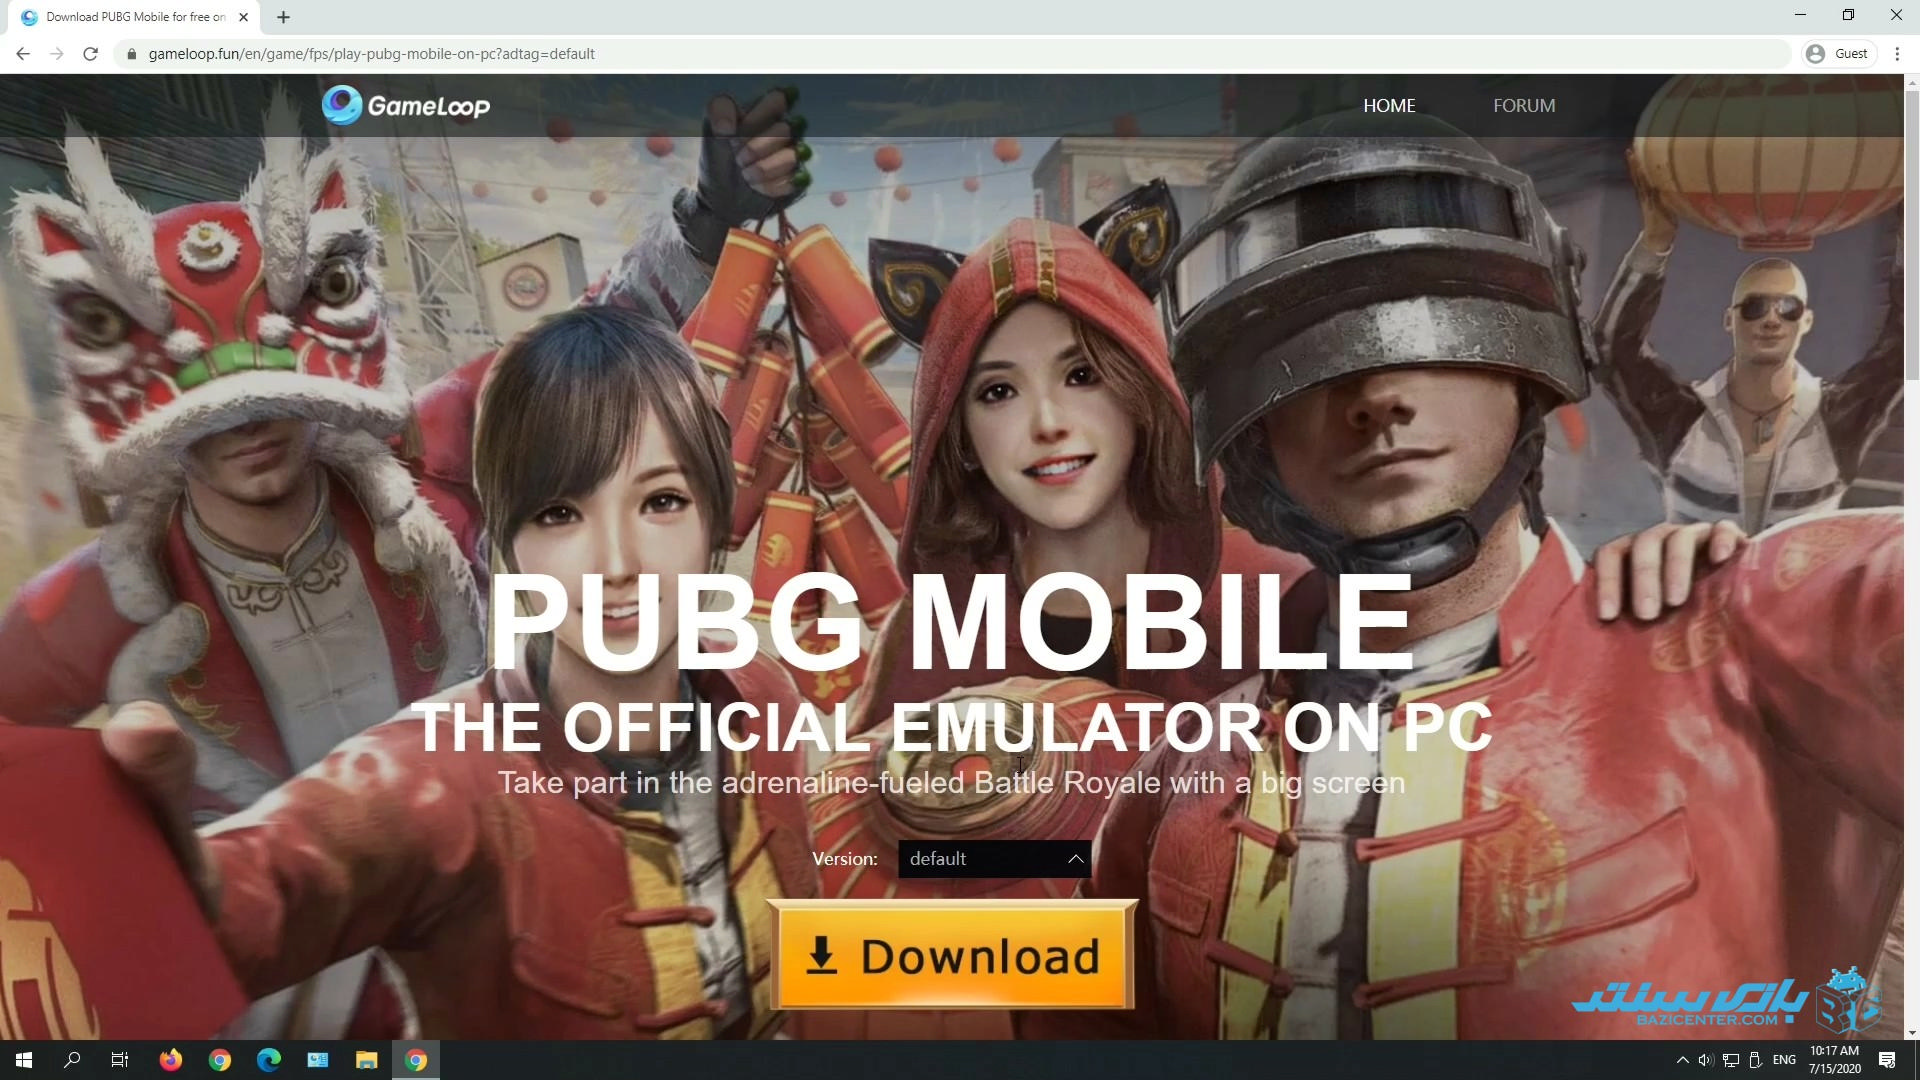 pubgmobile | gameloop website